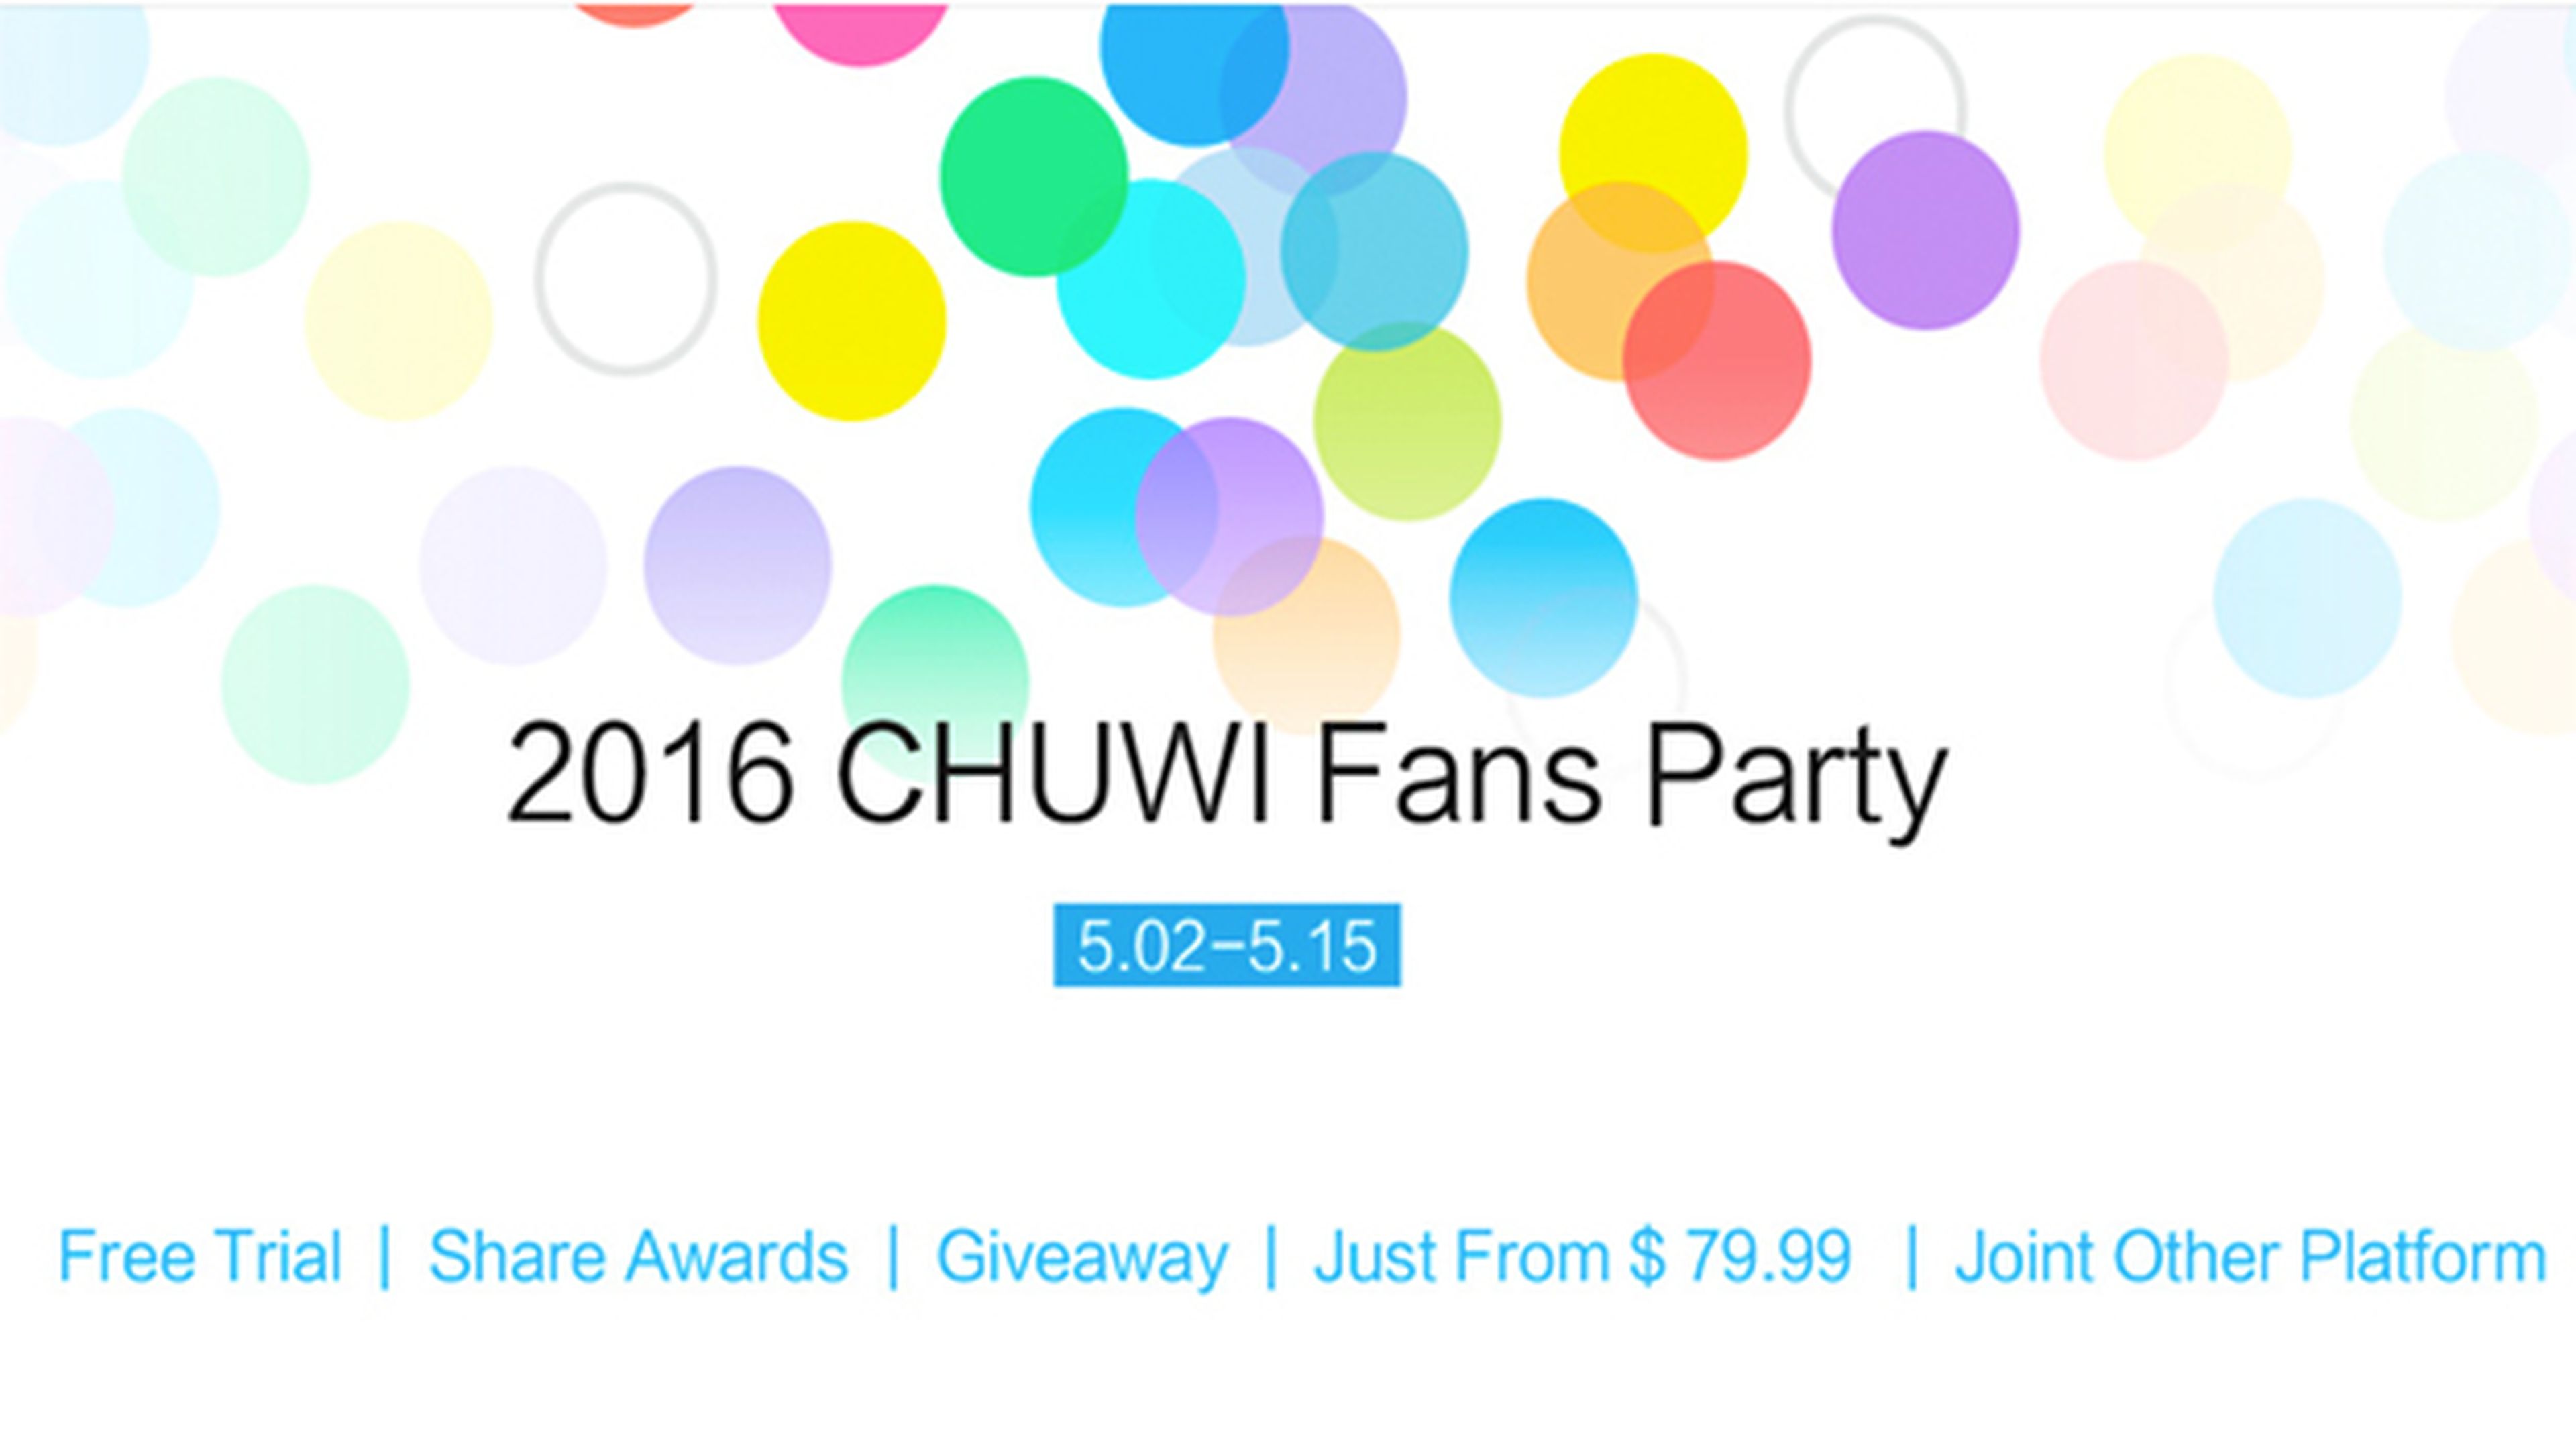 Chuwi celebra su 12 aniversario y te invita a su Fans party